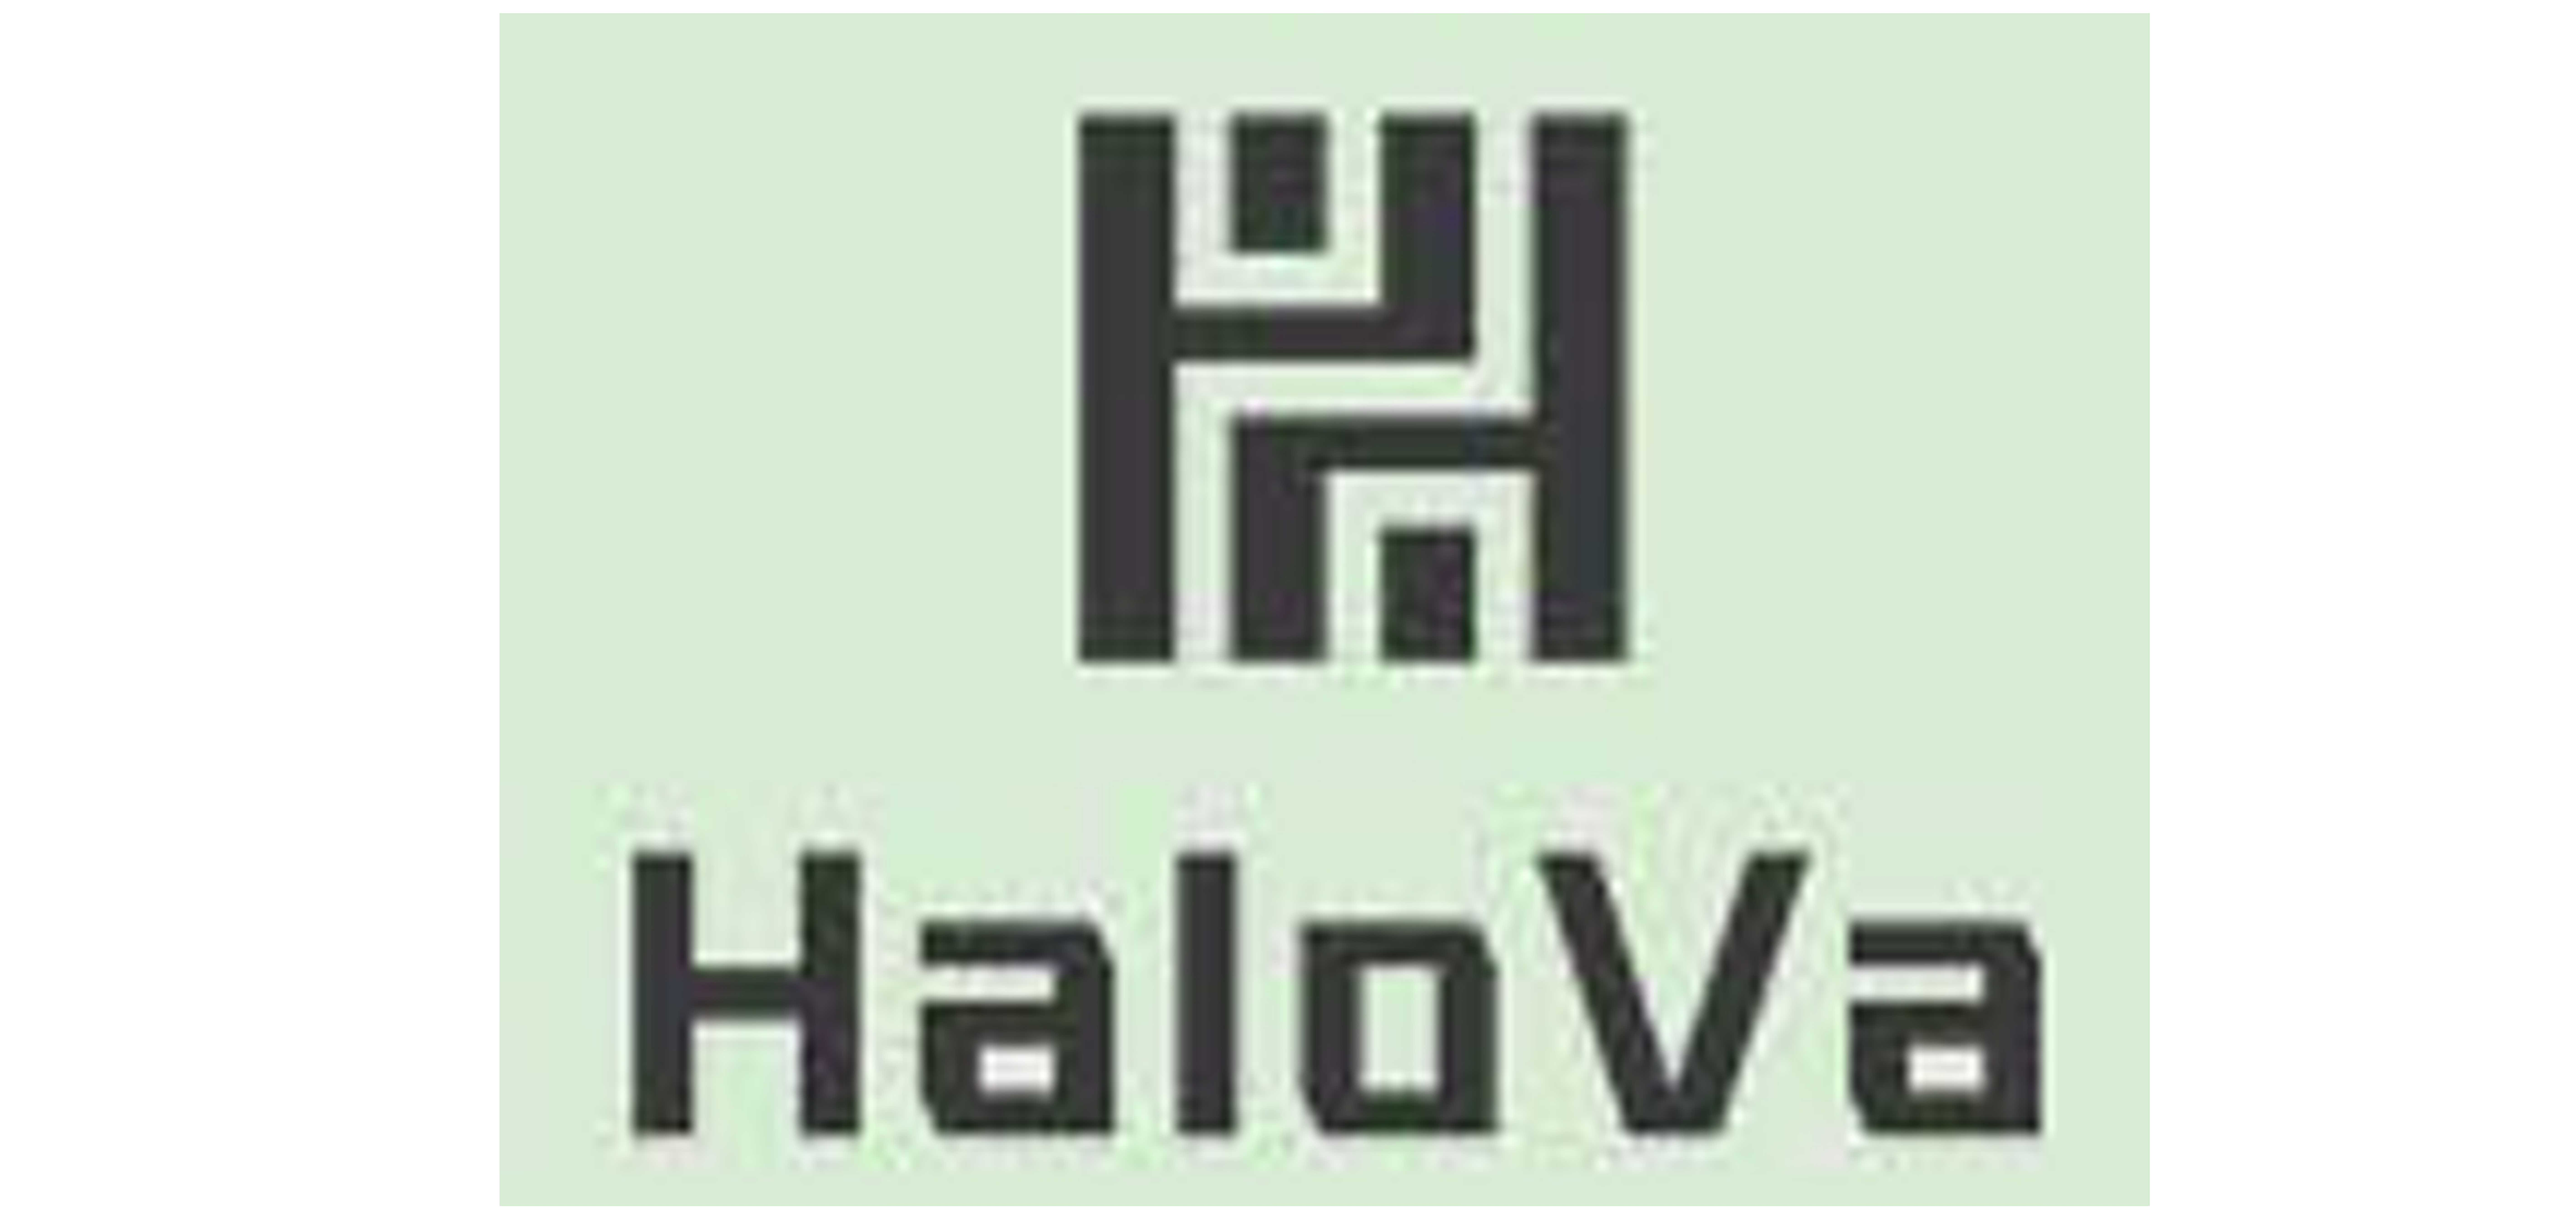 HaloVa